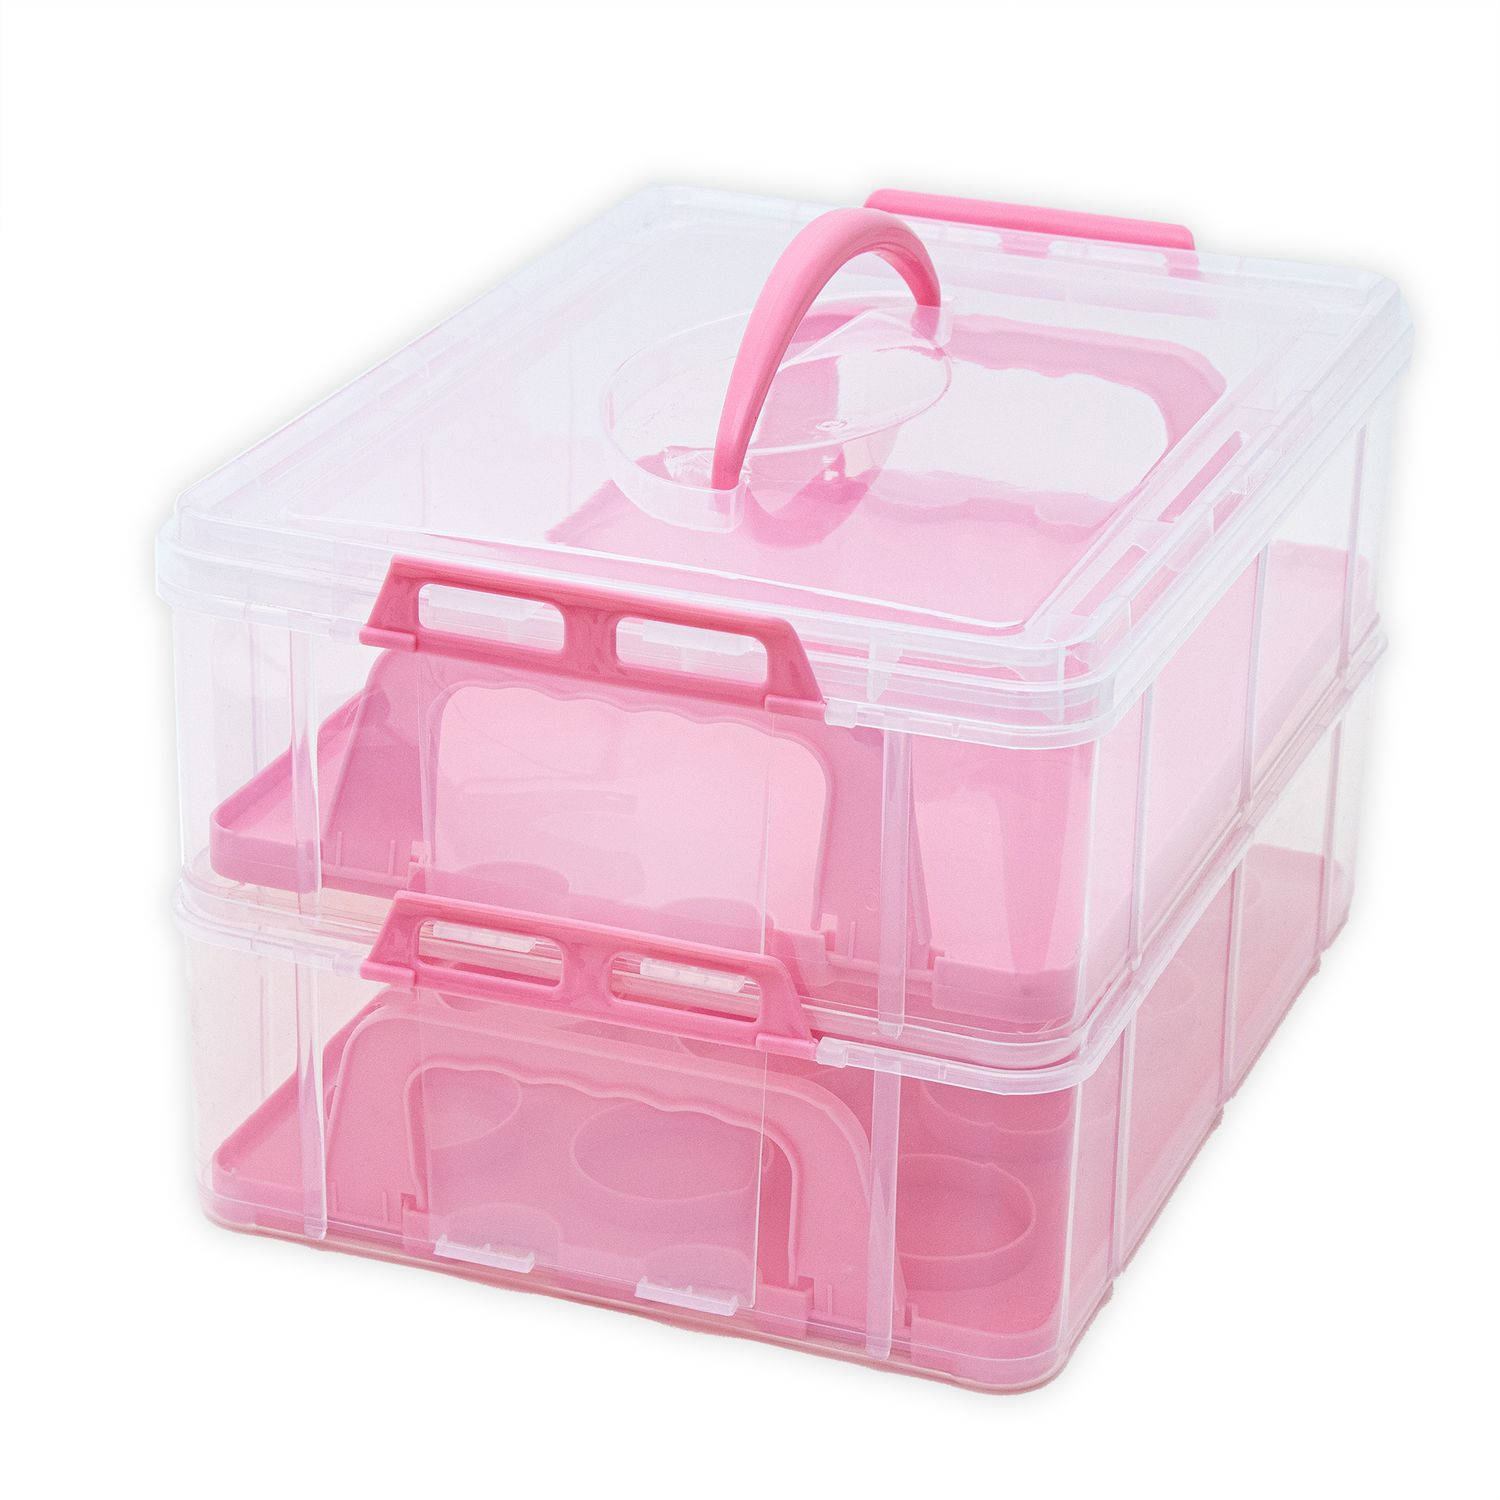 Intirilife transportbox container voor taarten en cupcakes 2 niveaus van kunststof in roze - 36,1 x 26,1 x 21,2 cm